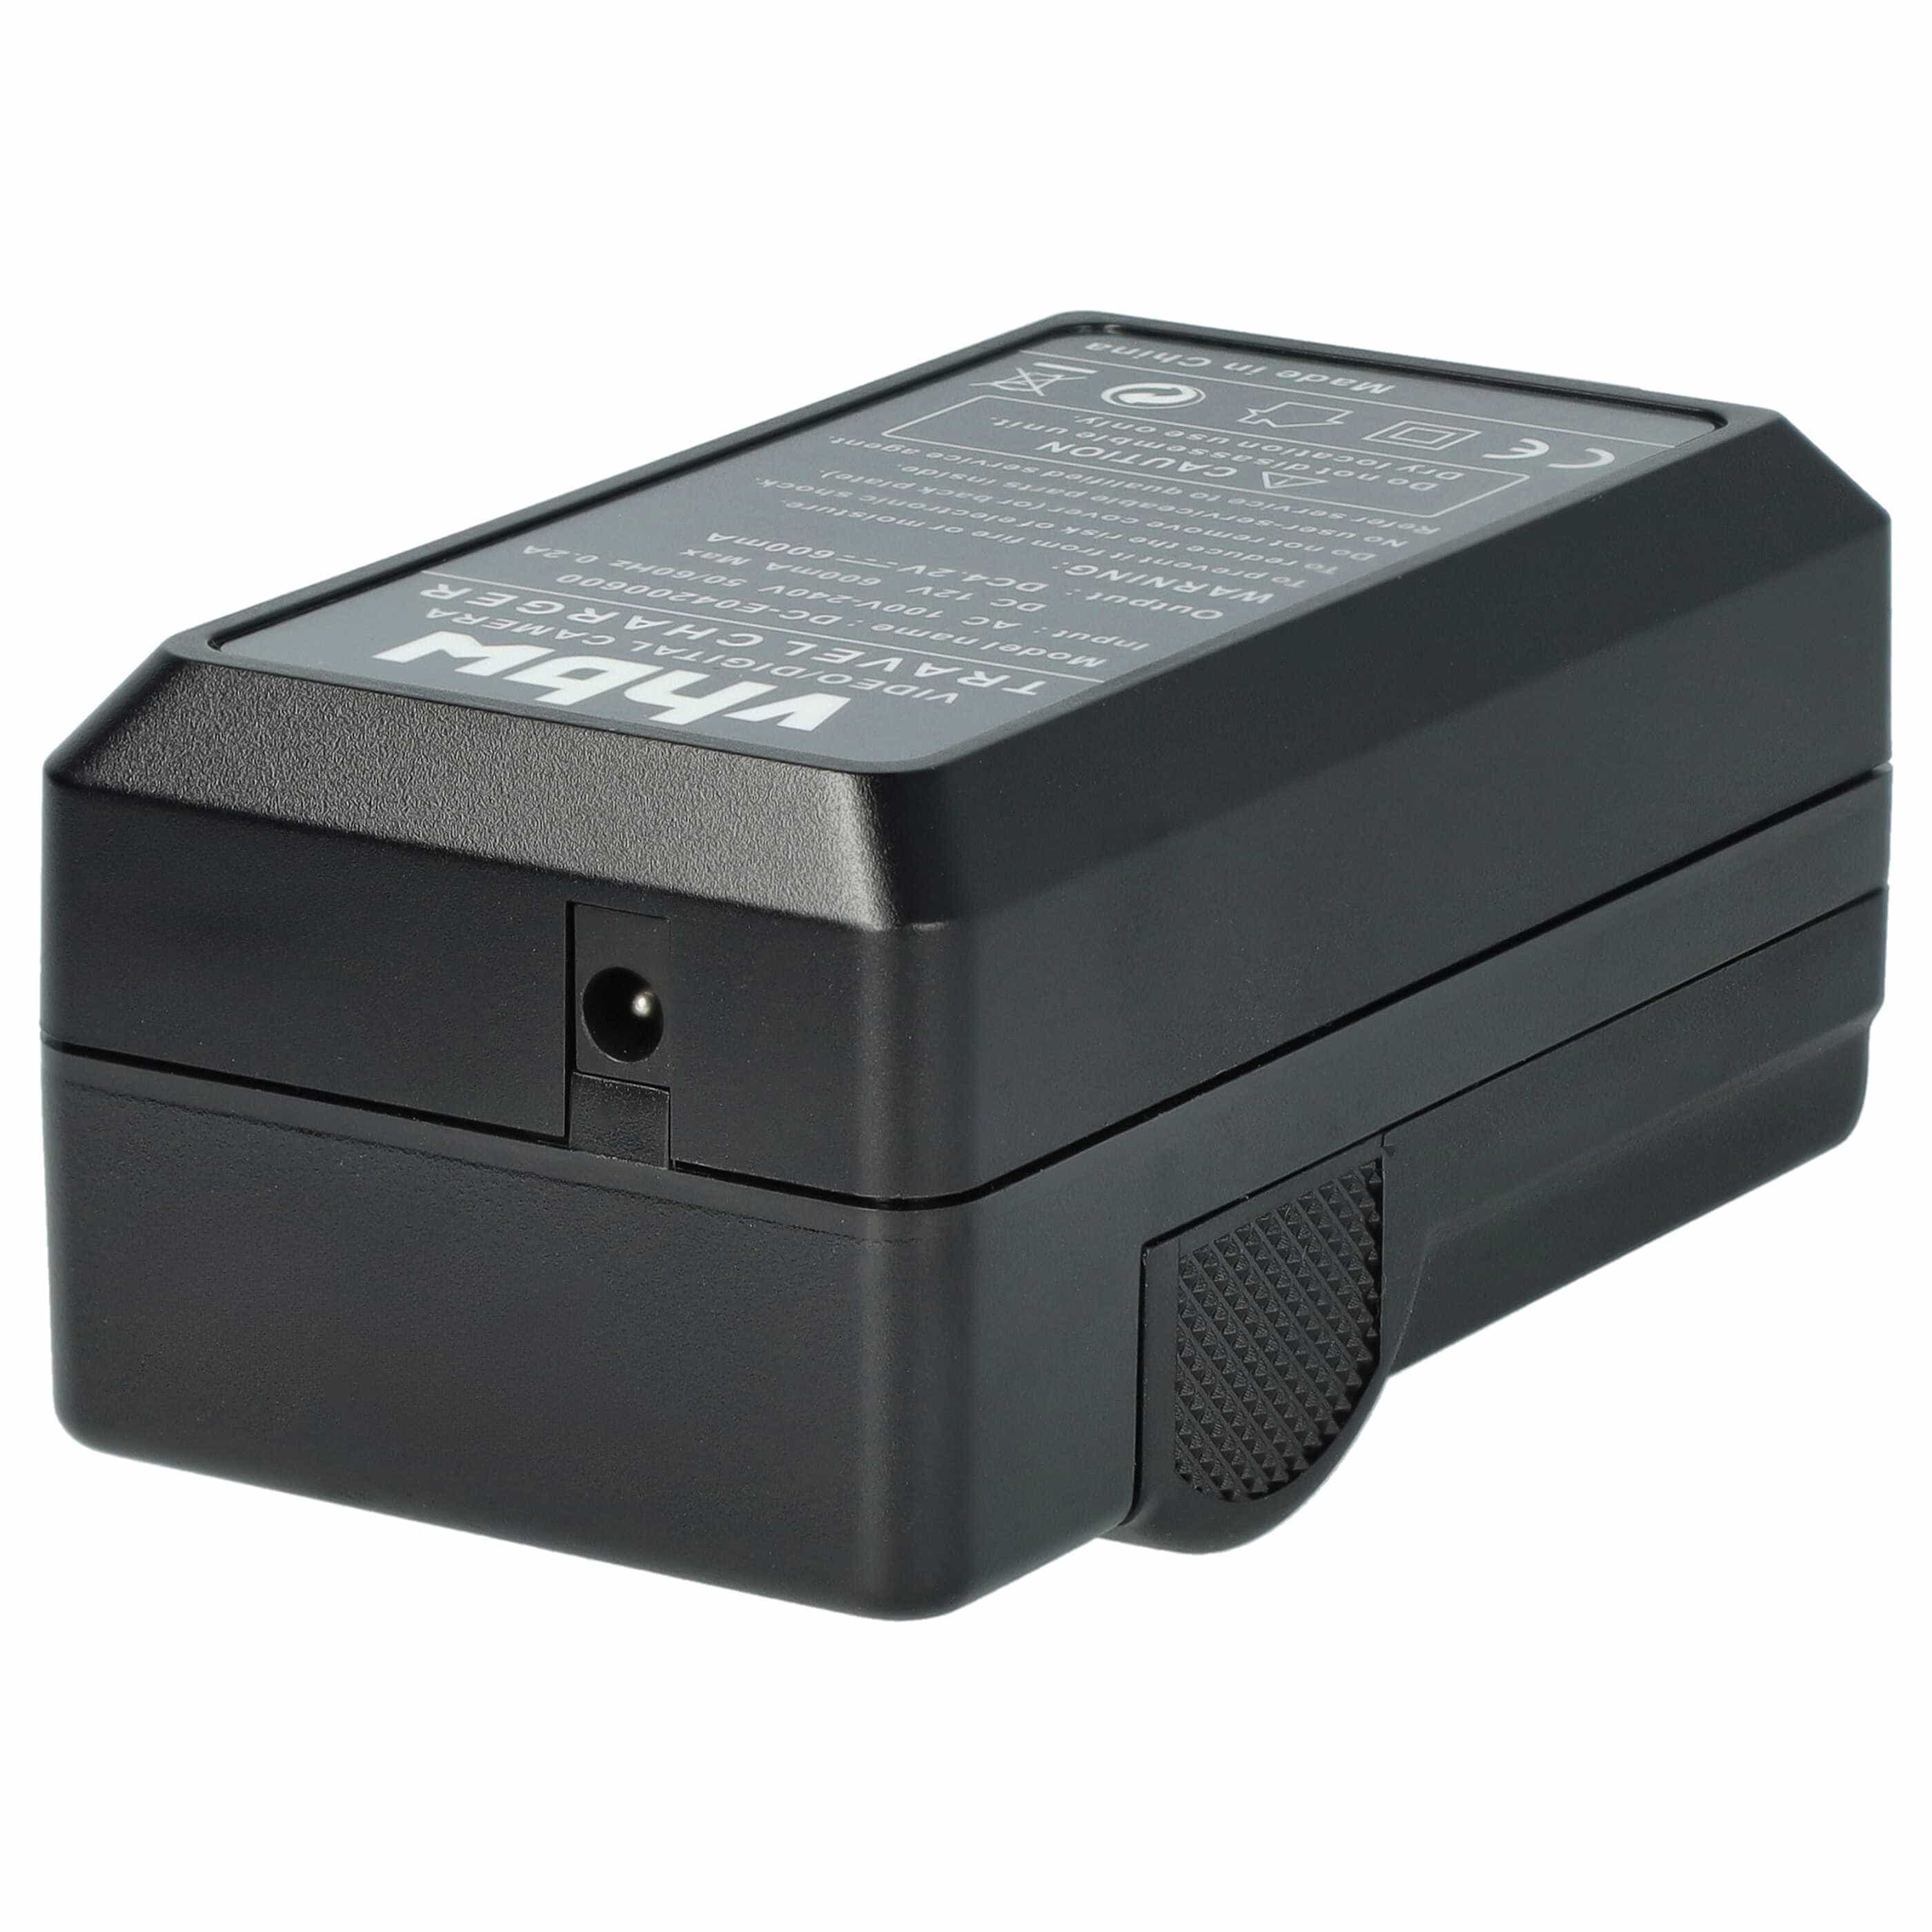 Akku Ladegerät passend für Lumix DMC-TZ1 Kamera u.a. - 0,6 A, 4,2 V